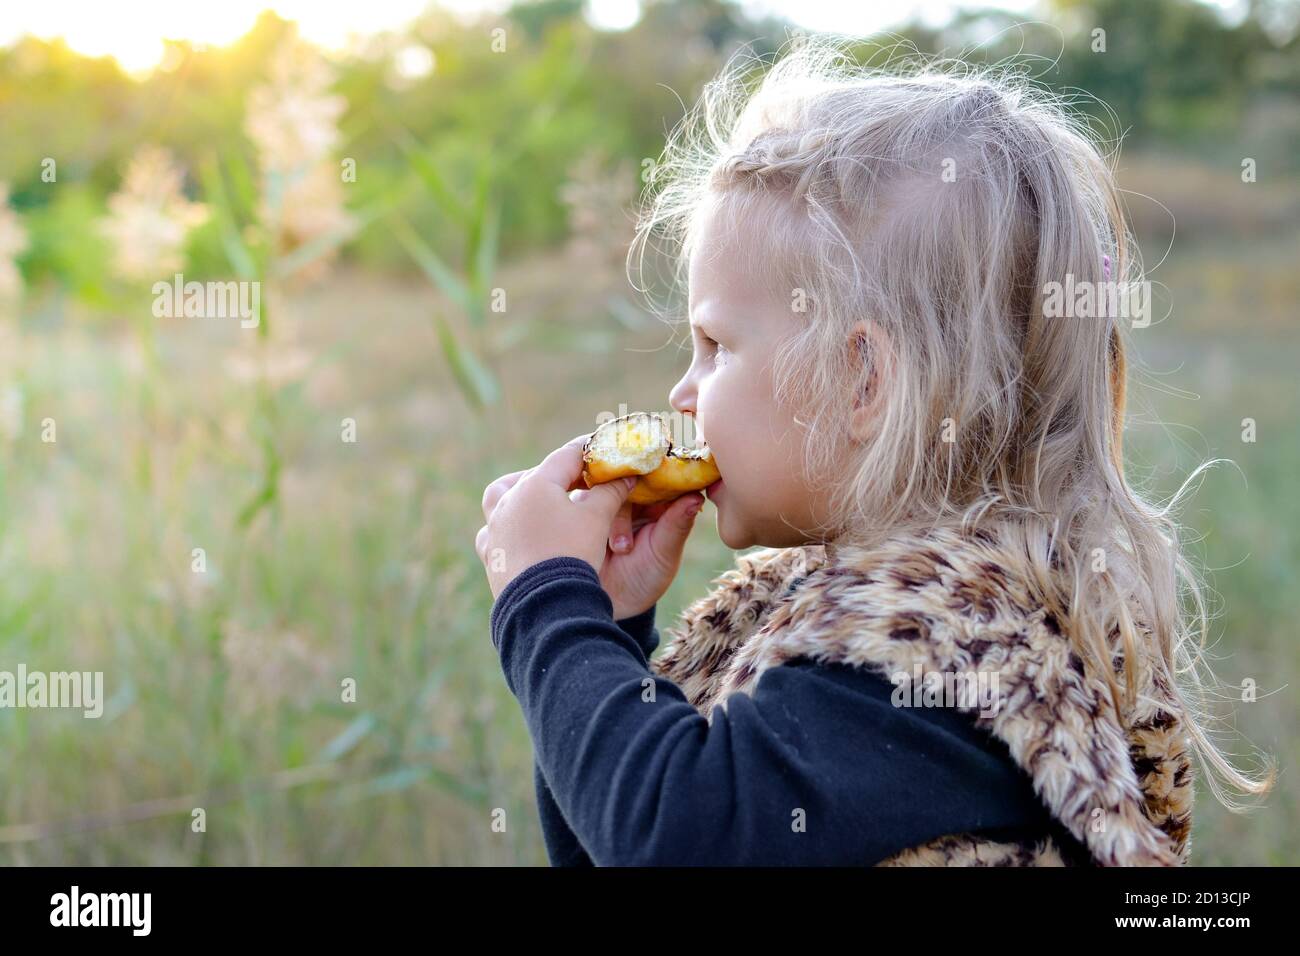 Chica al aire libre en la naturaleza. Hermosa chica de 3 años. Foto de otoño. Las emociones de los niños. Niña comiendo donut Foto de stock